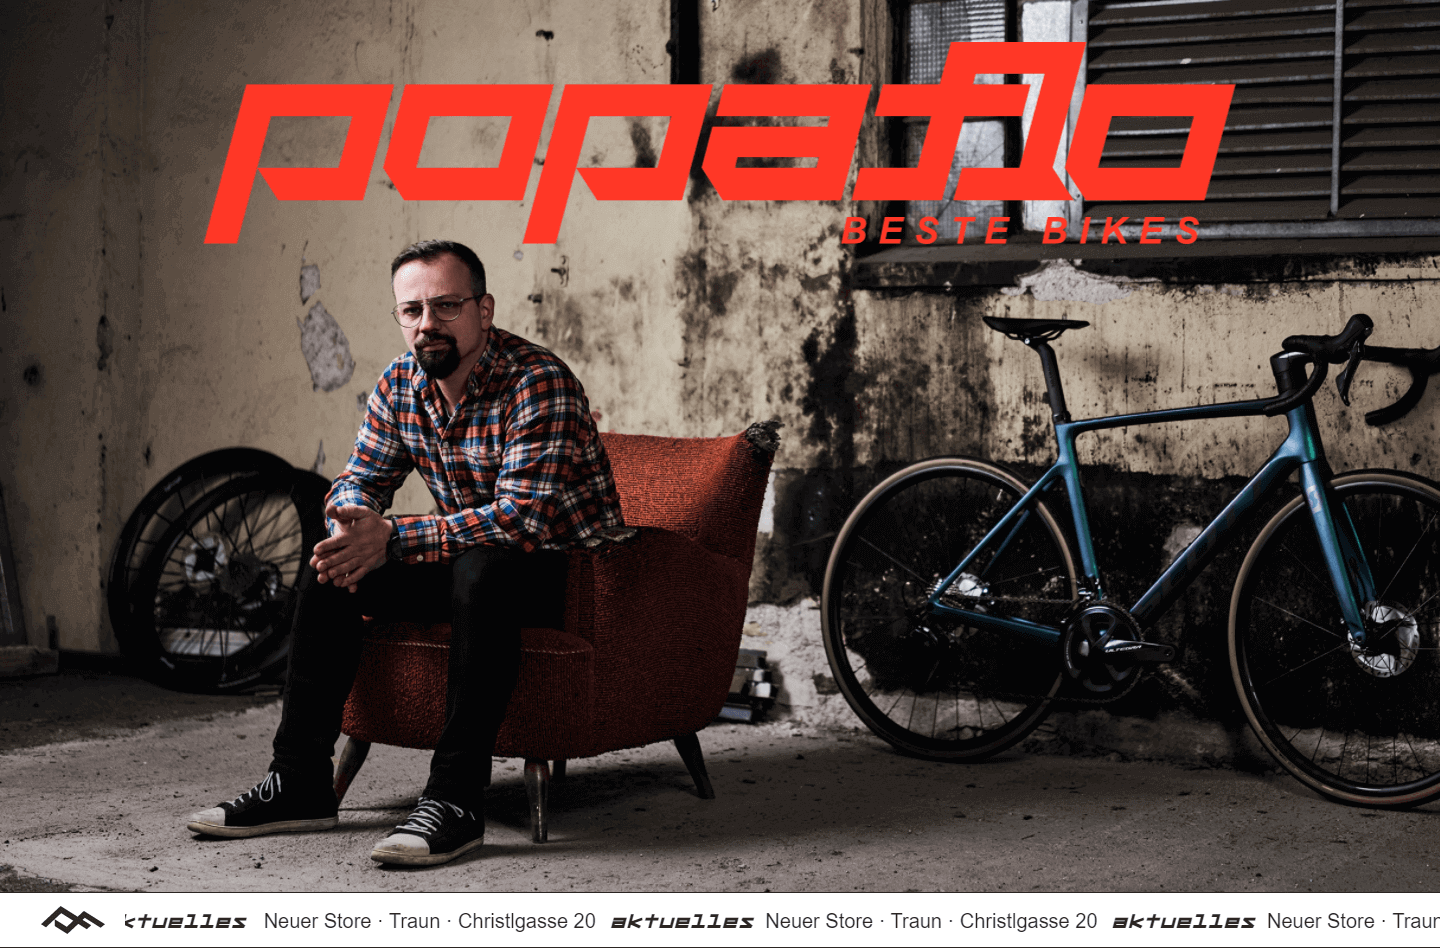 Popaflo / Beste Bikes